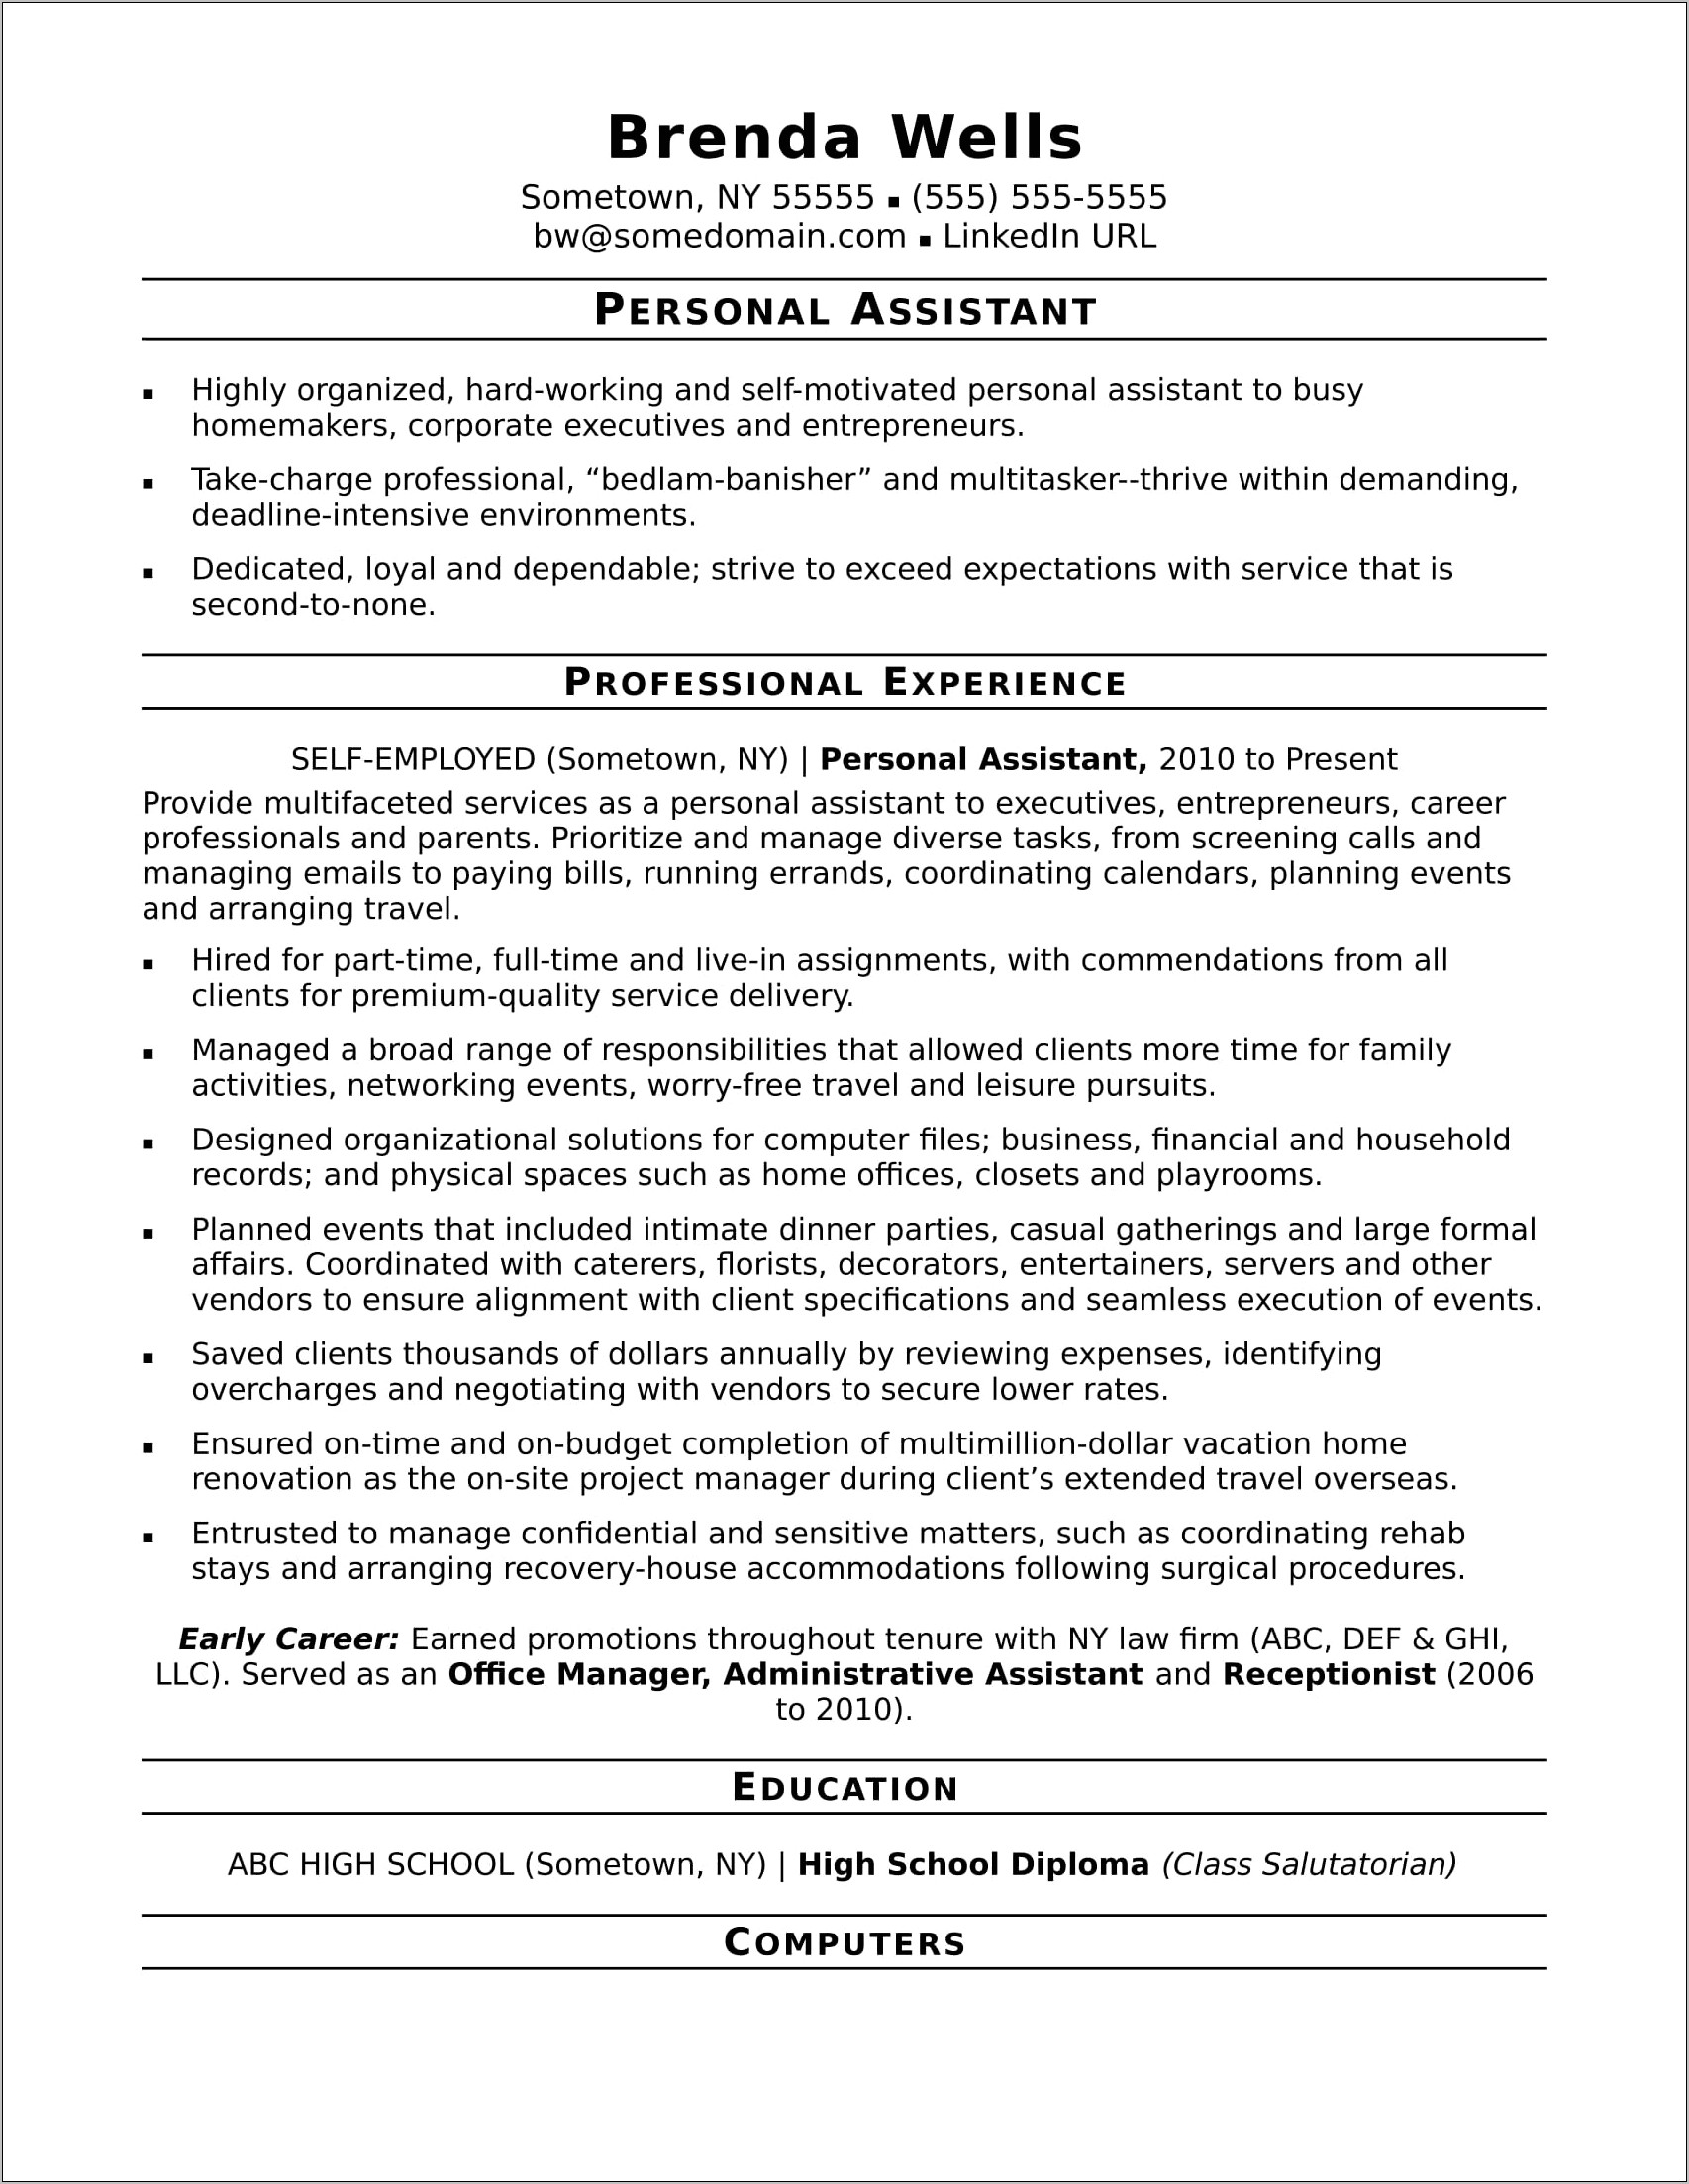 Profile Description Sample For Resume